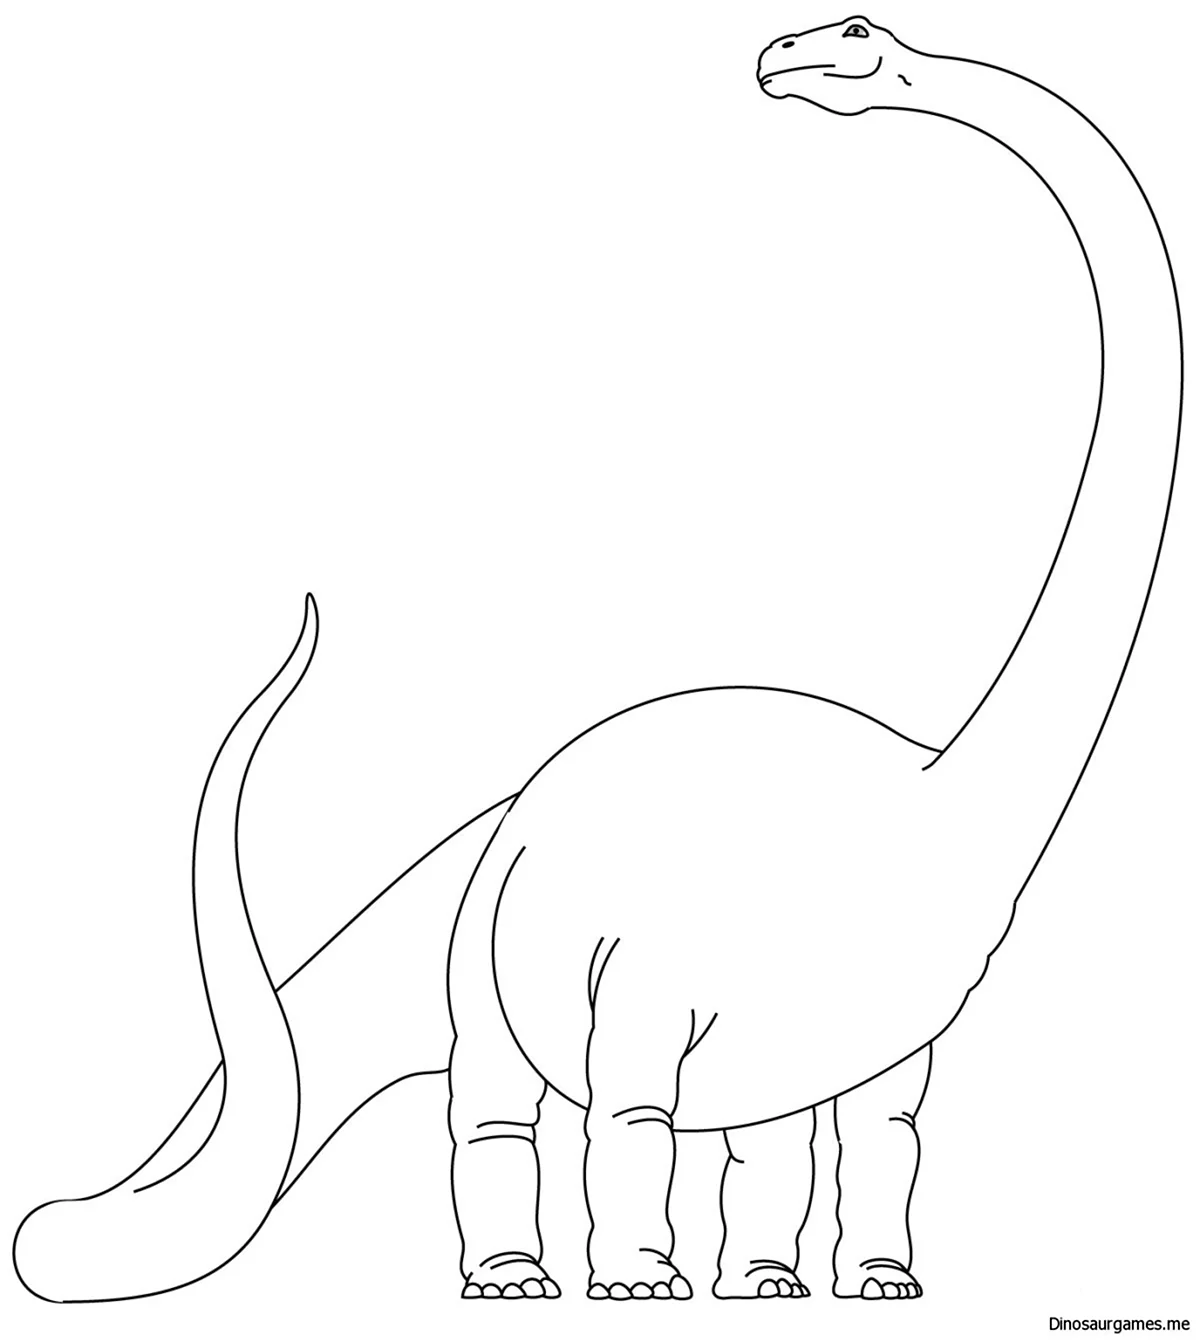 Диплодок Брахиозавр Бронтозавр